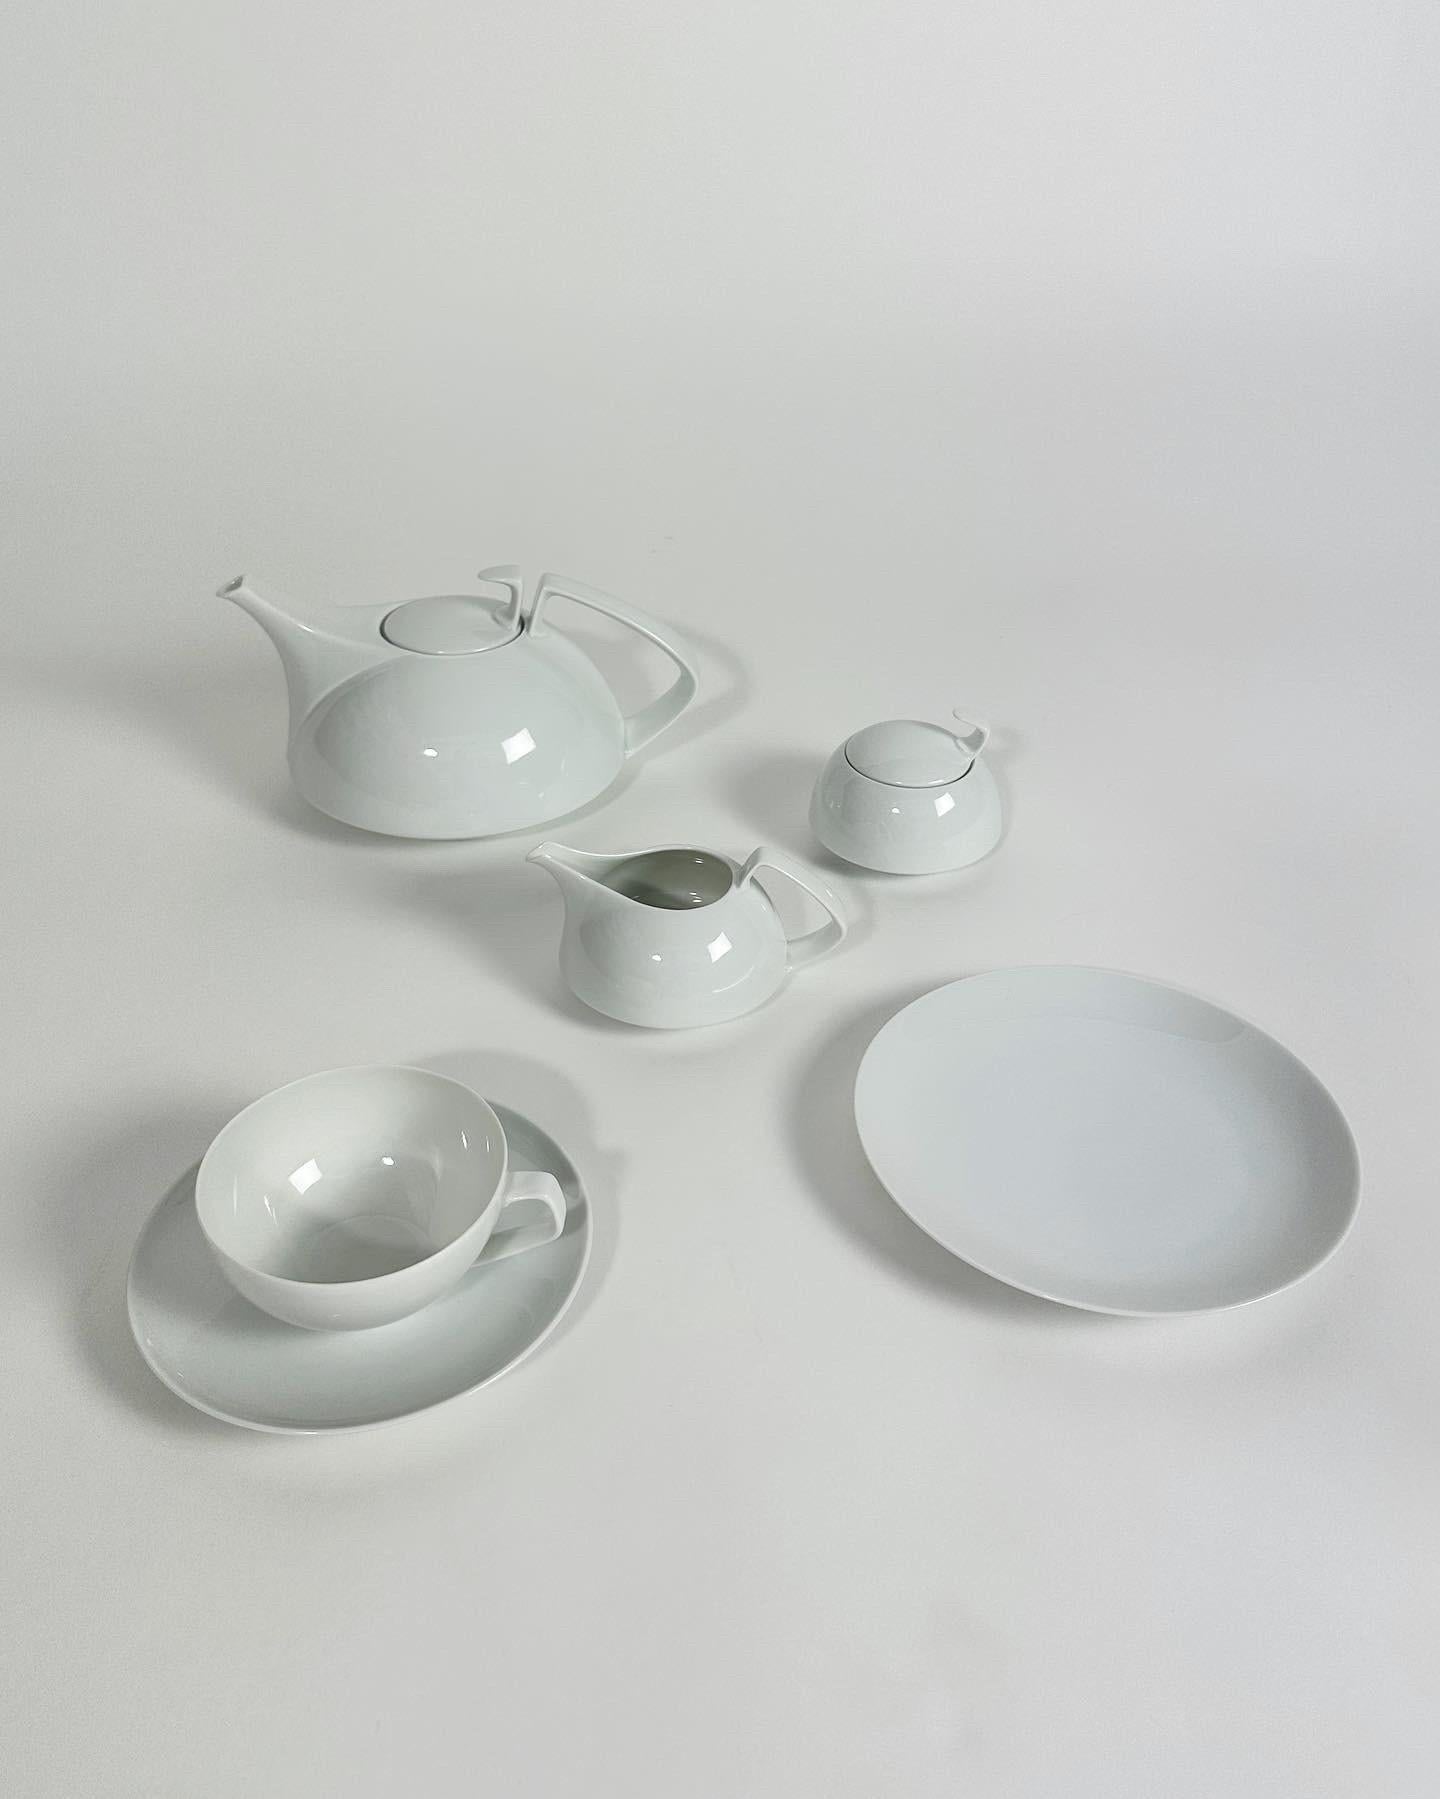 Bauhaus Walter Gropius Tea Set Rosenthal Germany TAC Porcelain 1969